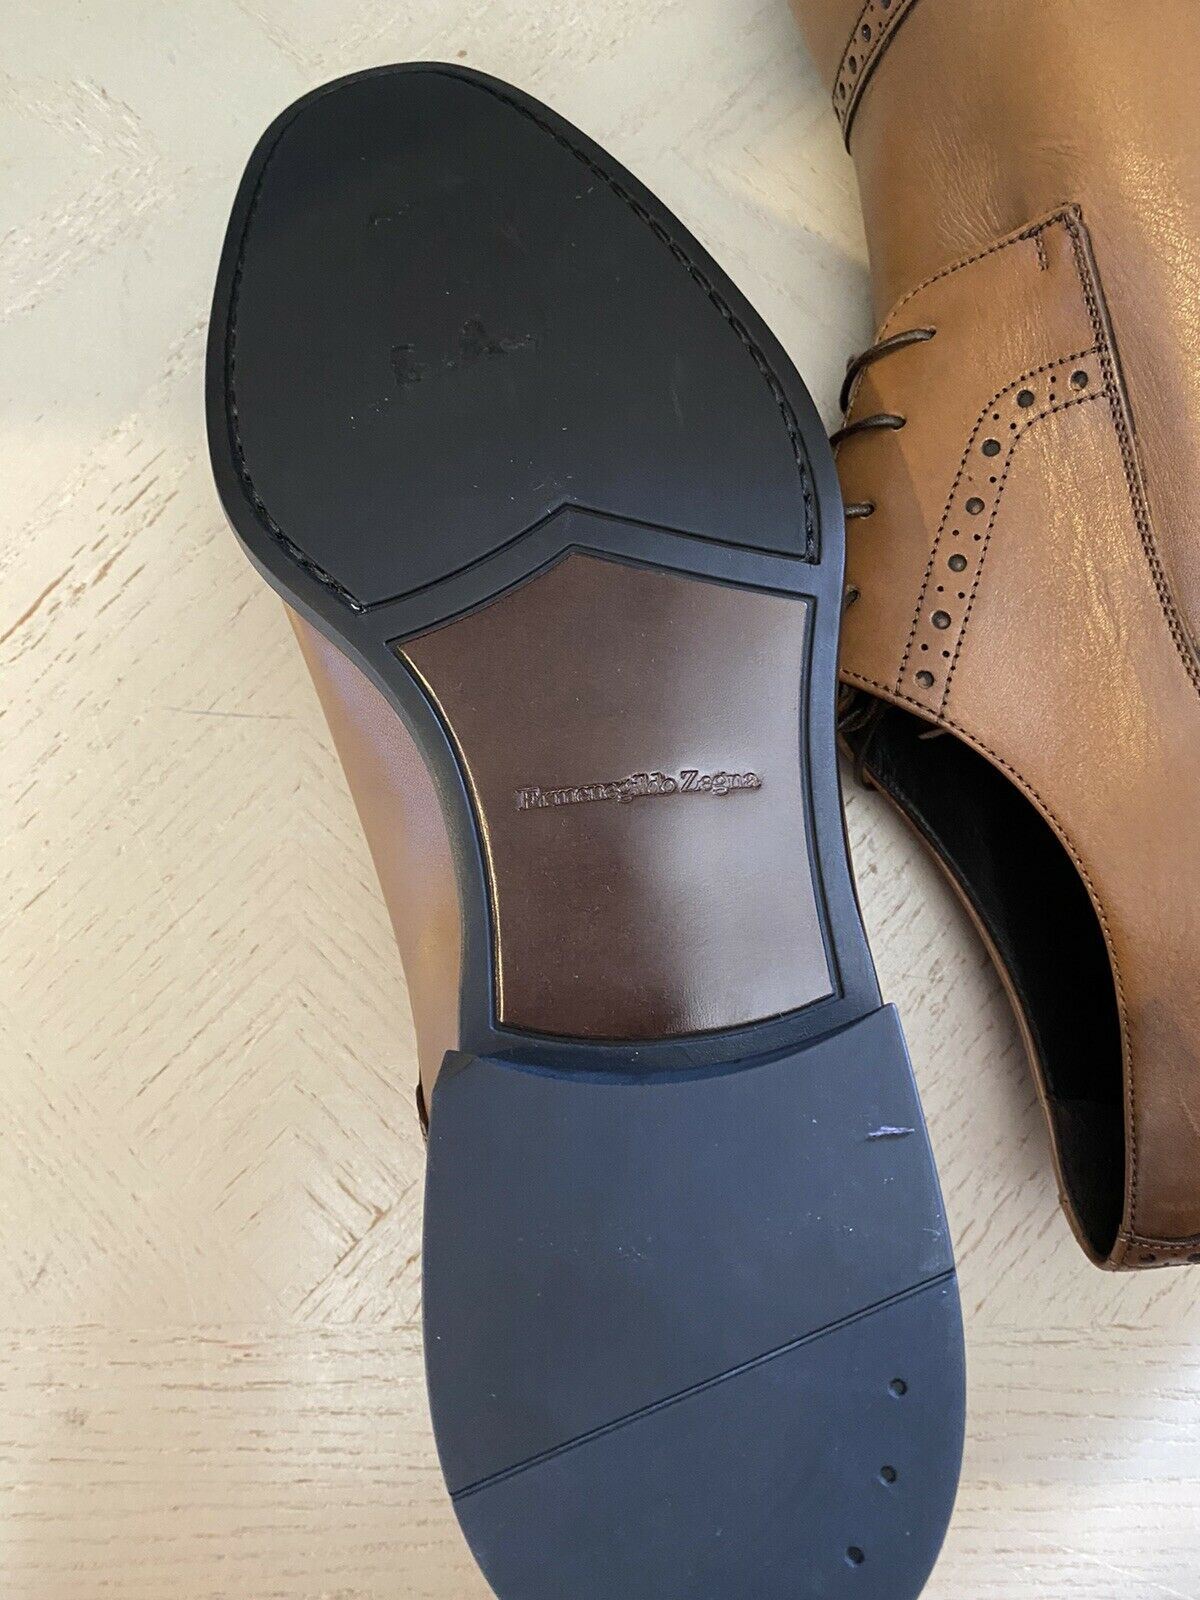 New $595 Ermenegildo Zegna Oxford Shoes Brown 11.5 US ( 44.5 Eu ) Italy